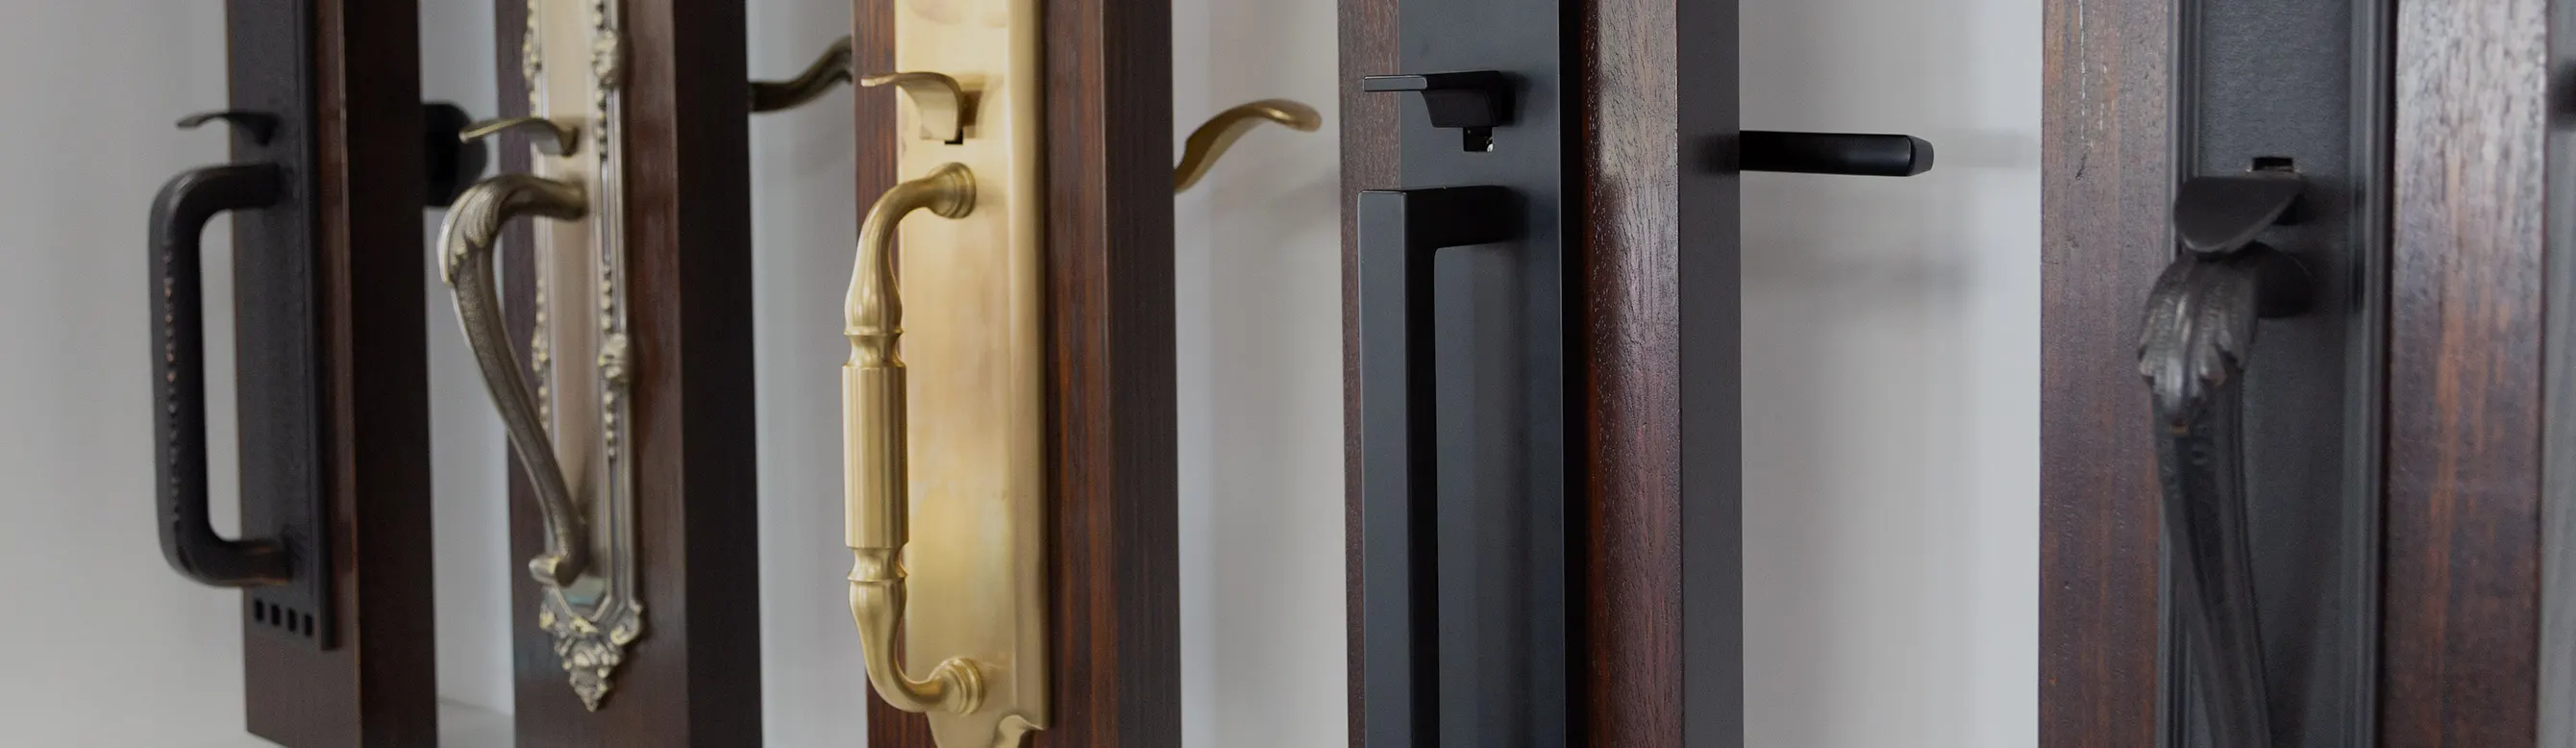 door locks and handles